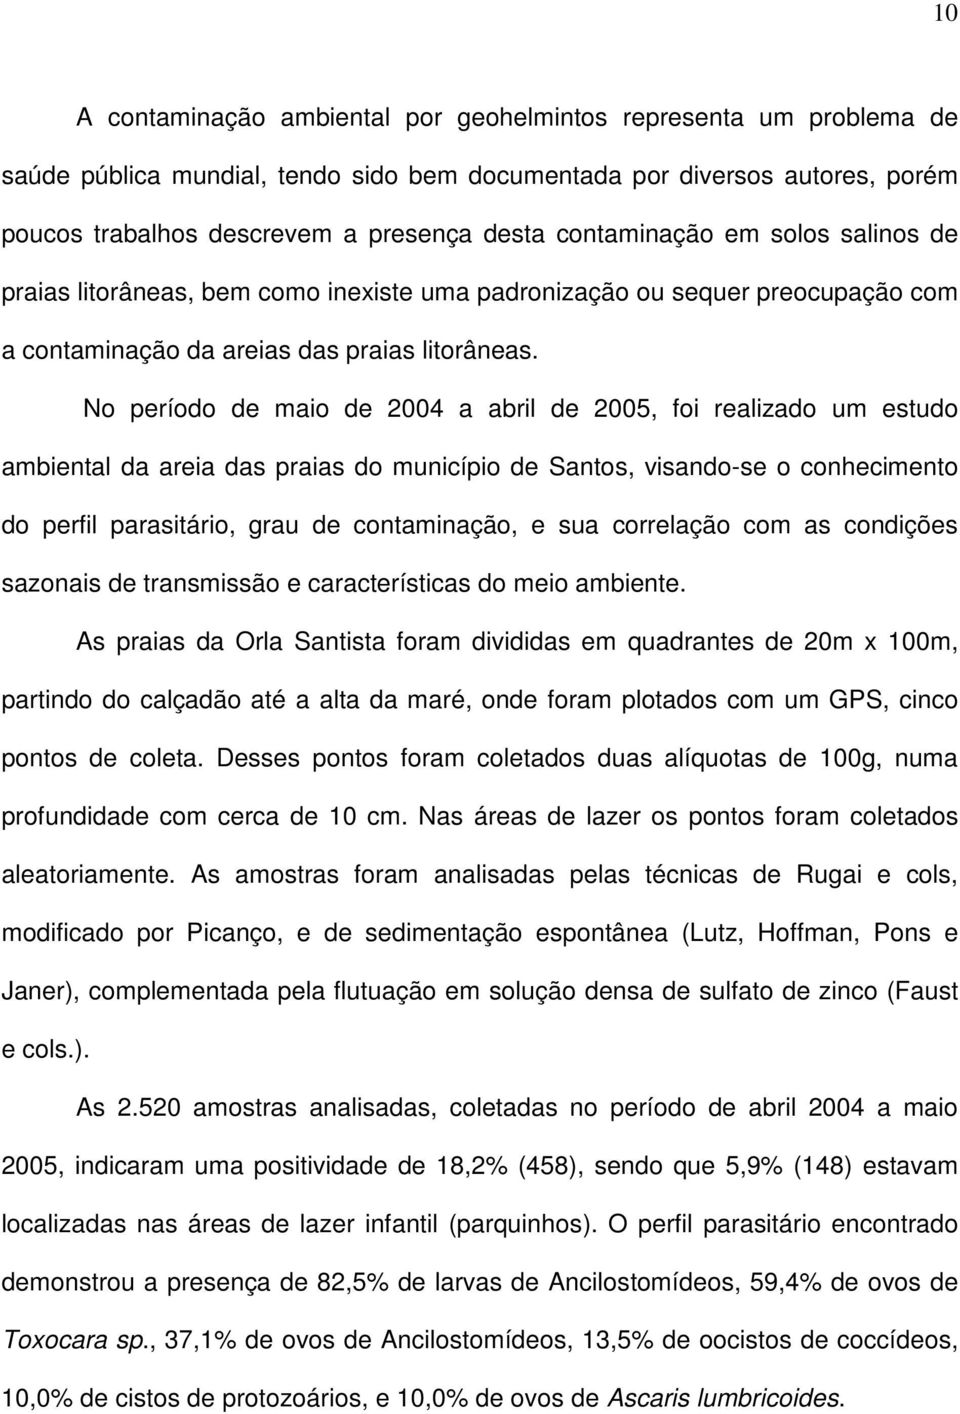 No período de maio de 2004 a abril de 2005, foi realizado um estudo ambiental da areia das praias do município de Santos, visando-se o conhecimento do perfil parasitário, grau de contaminação, e sua